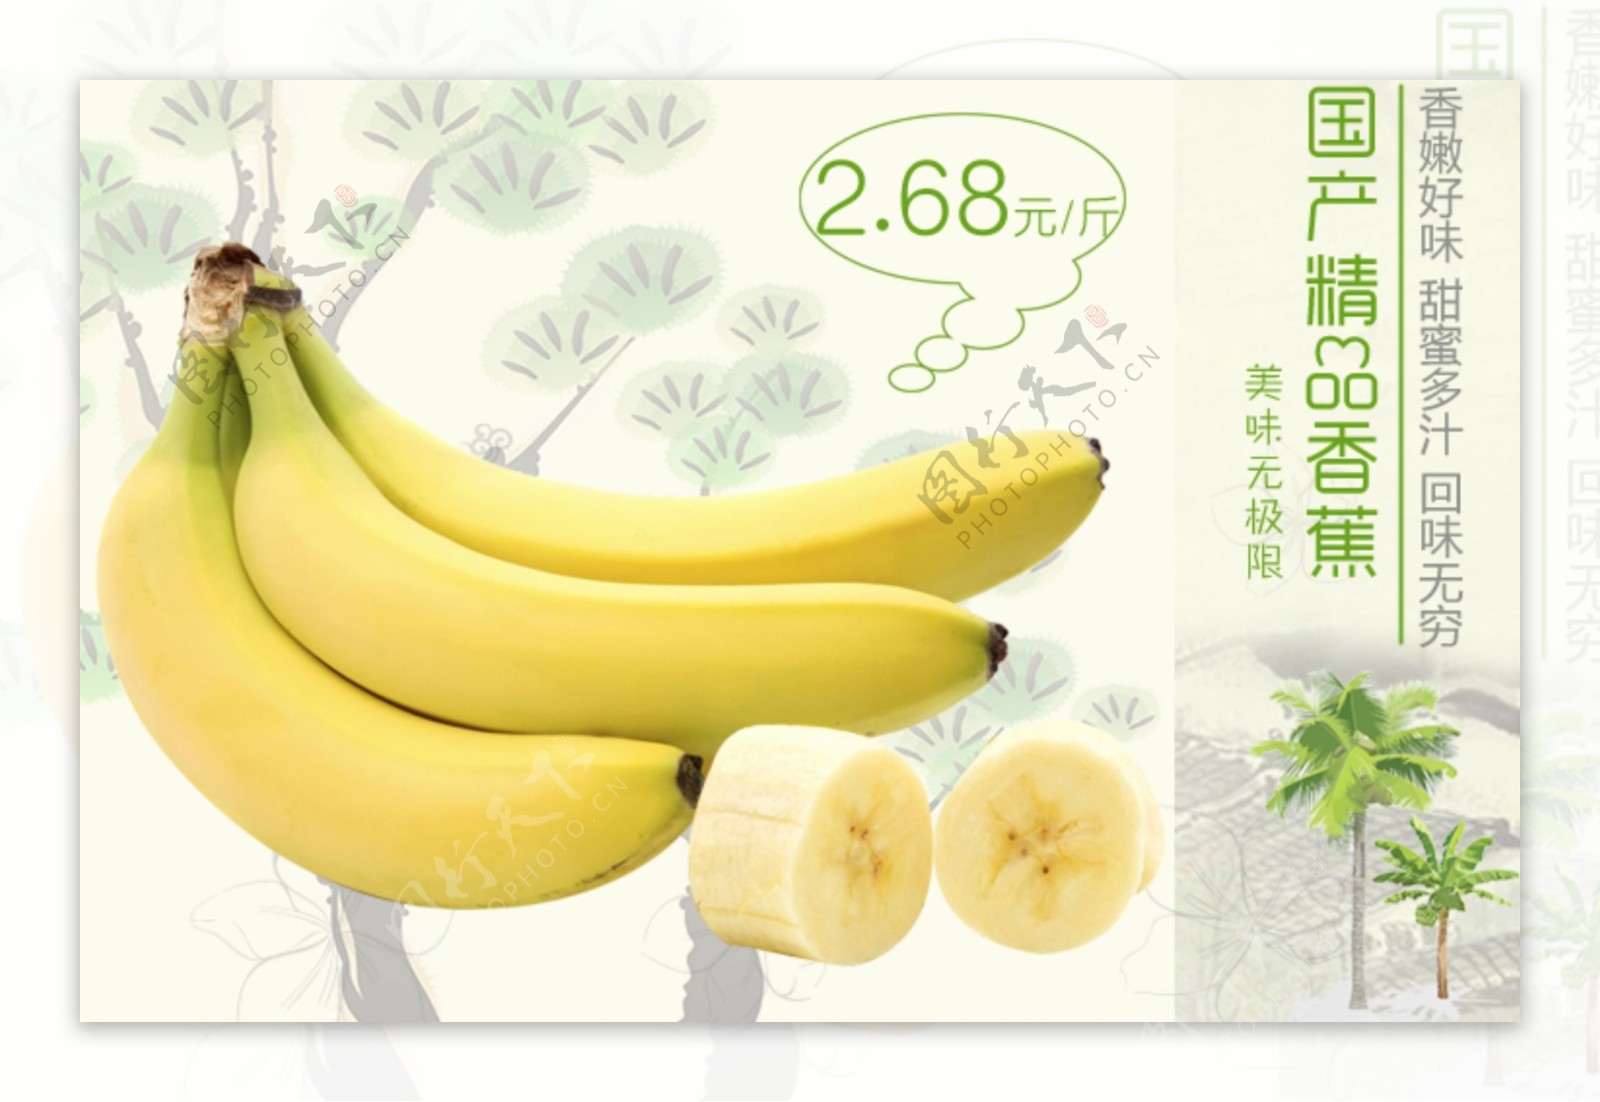 香蕉新品上市特价促销海报